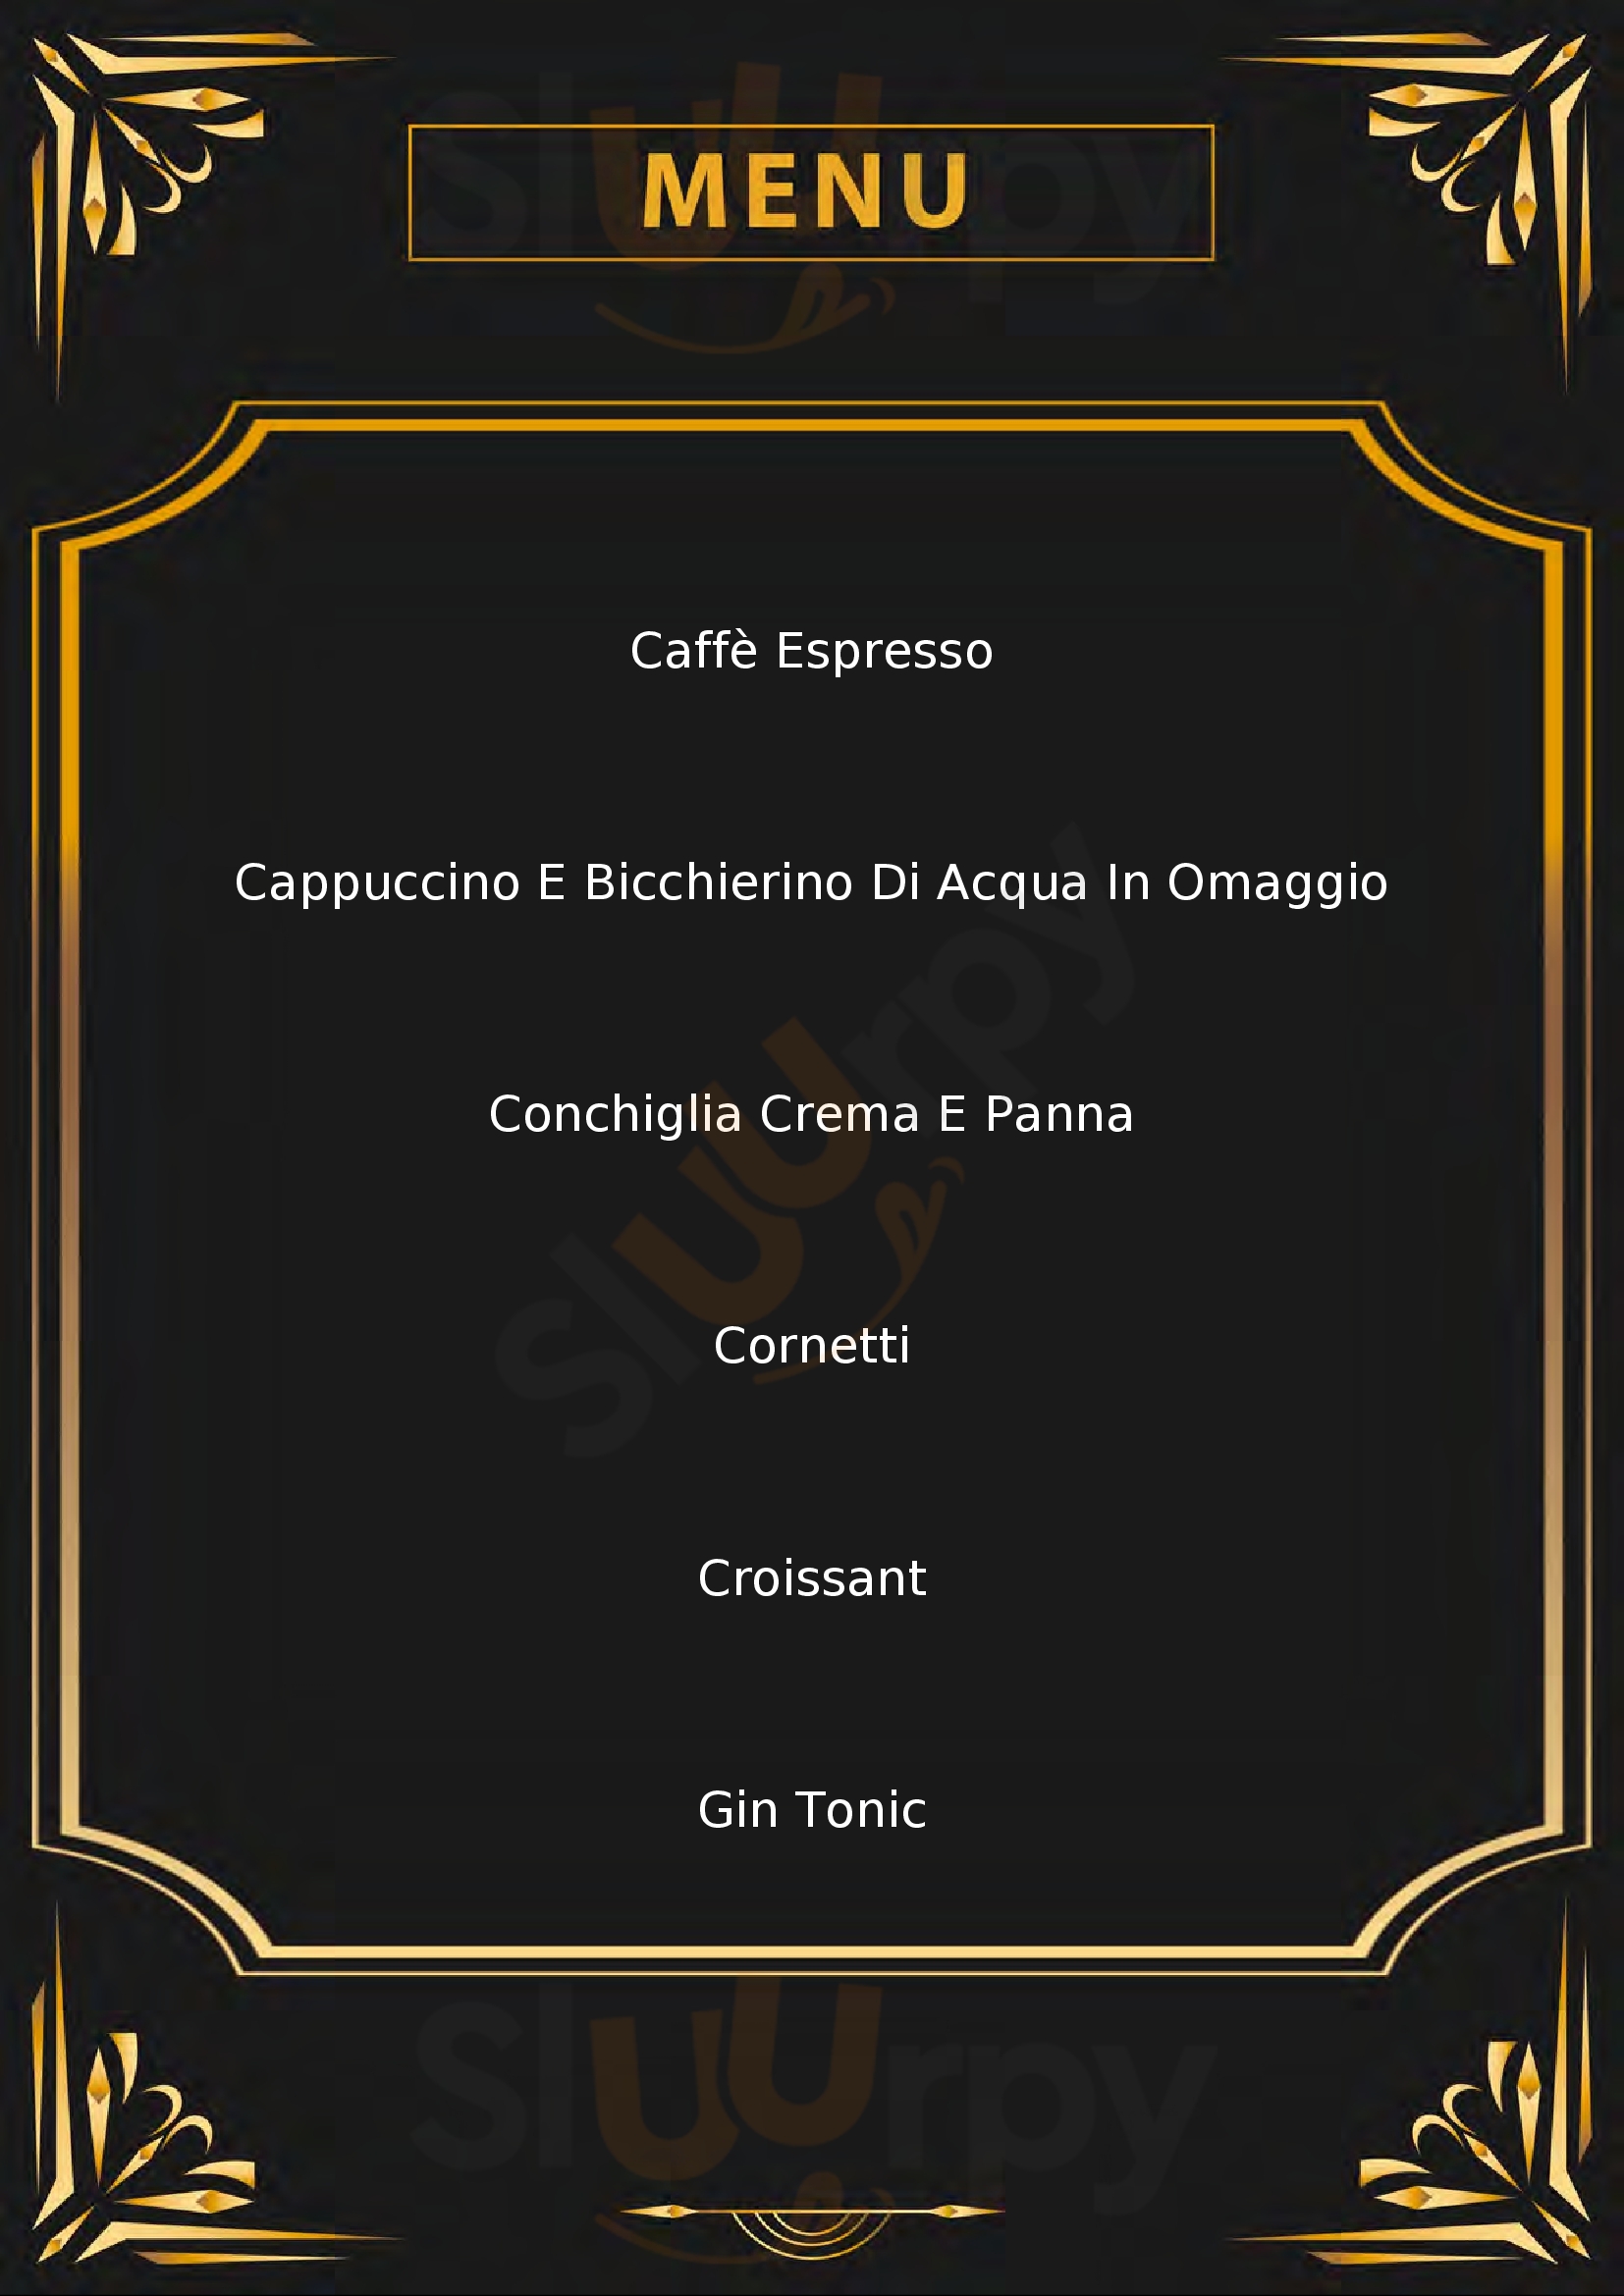 La Pinetina - Caffetteria Paninoteca Campomarino menù 1 pagina